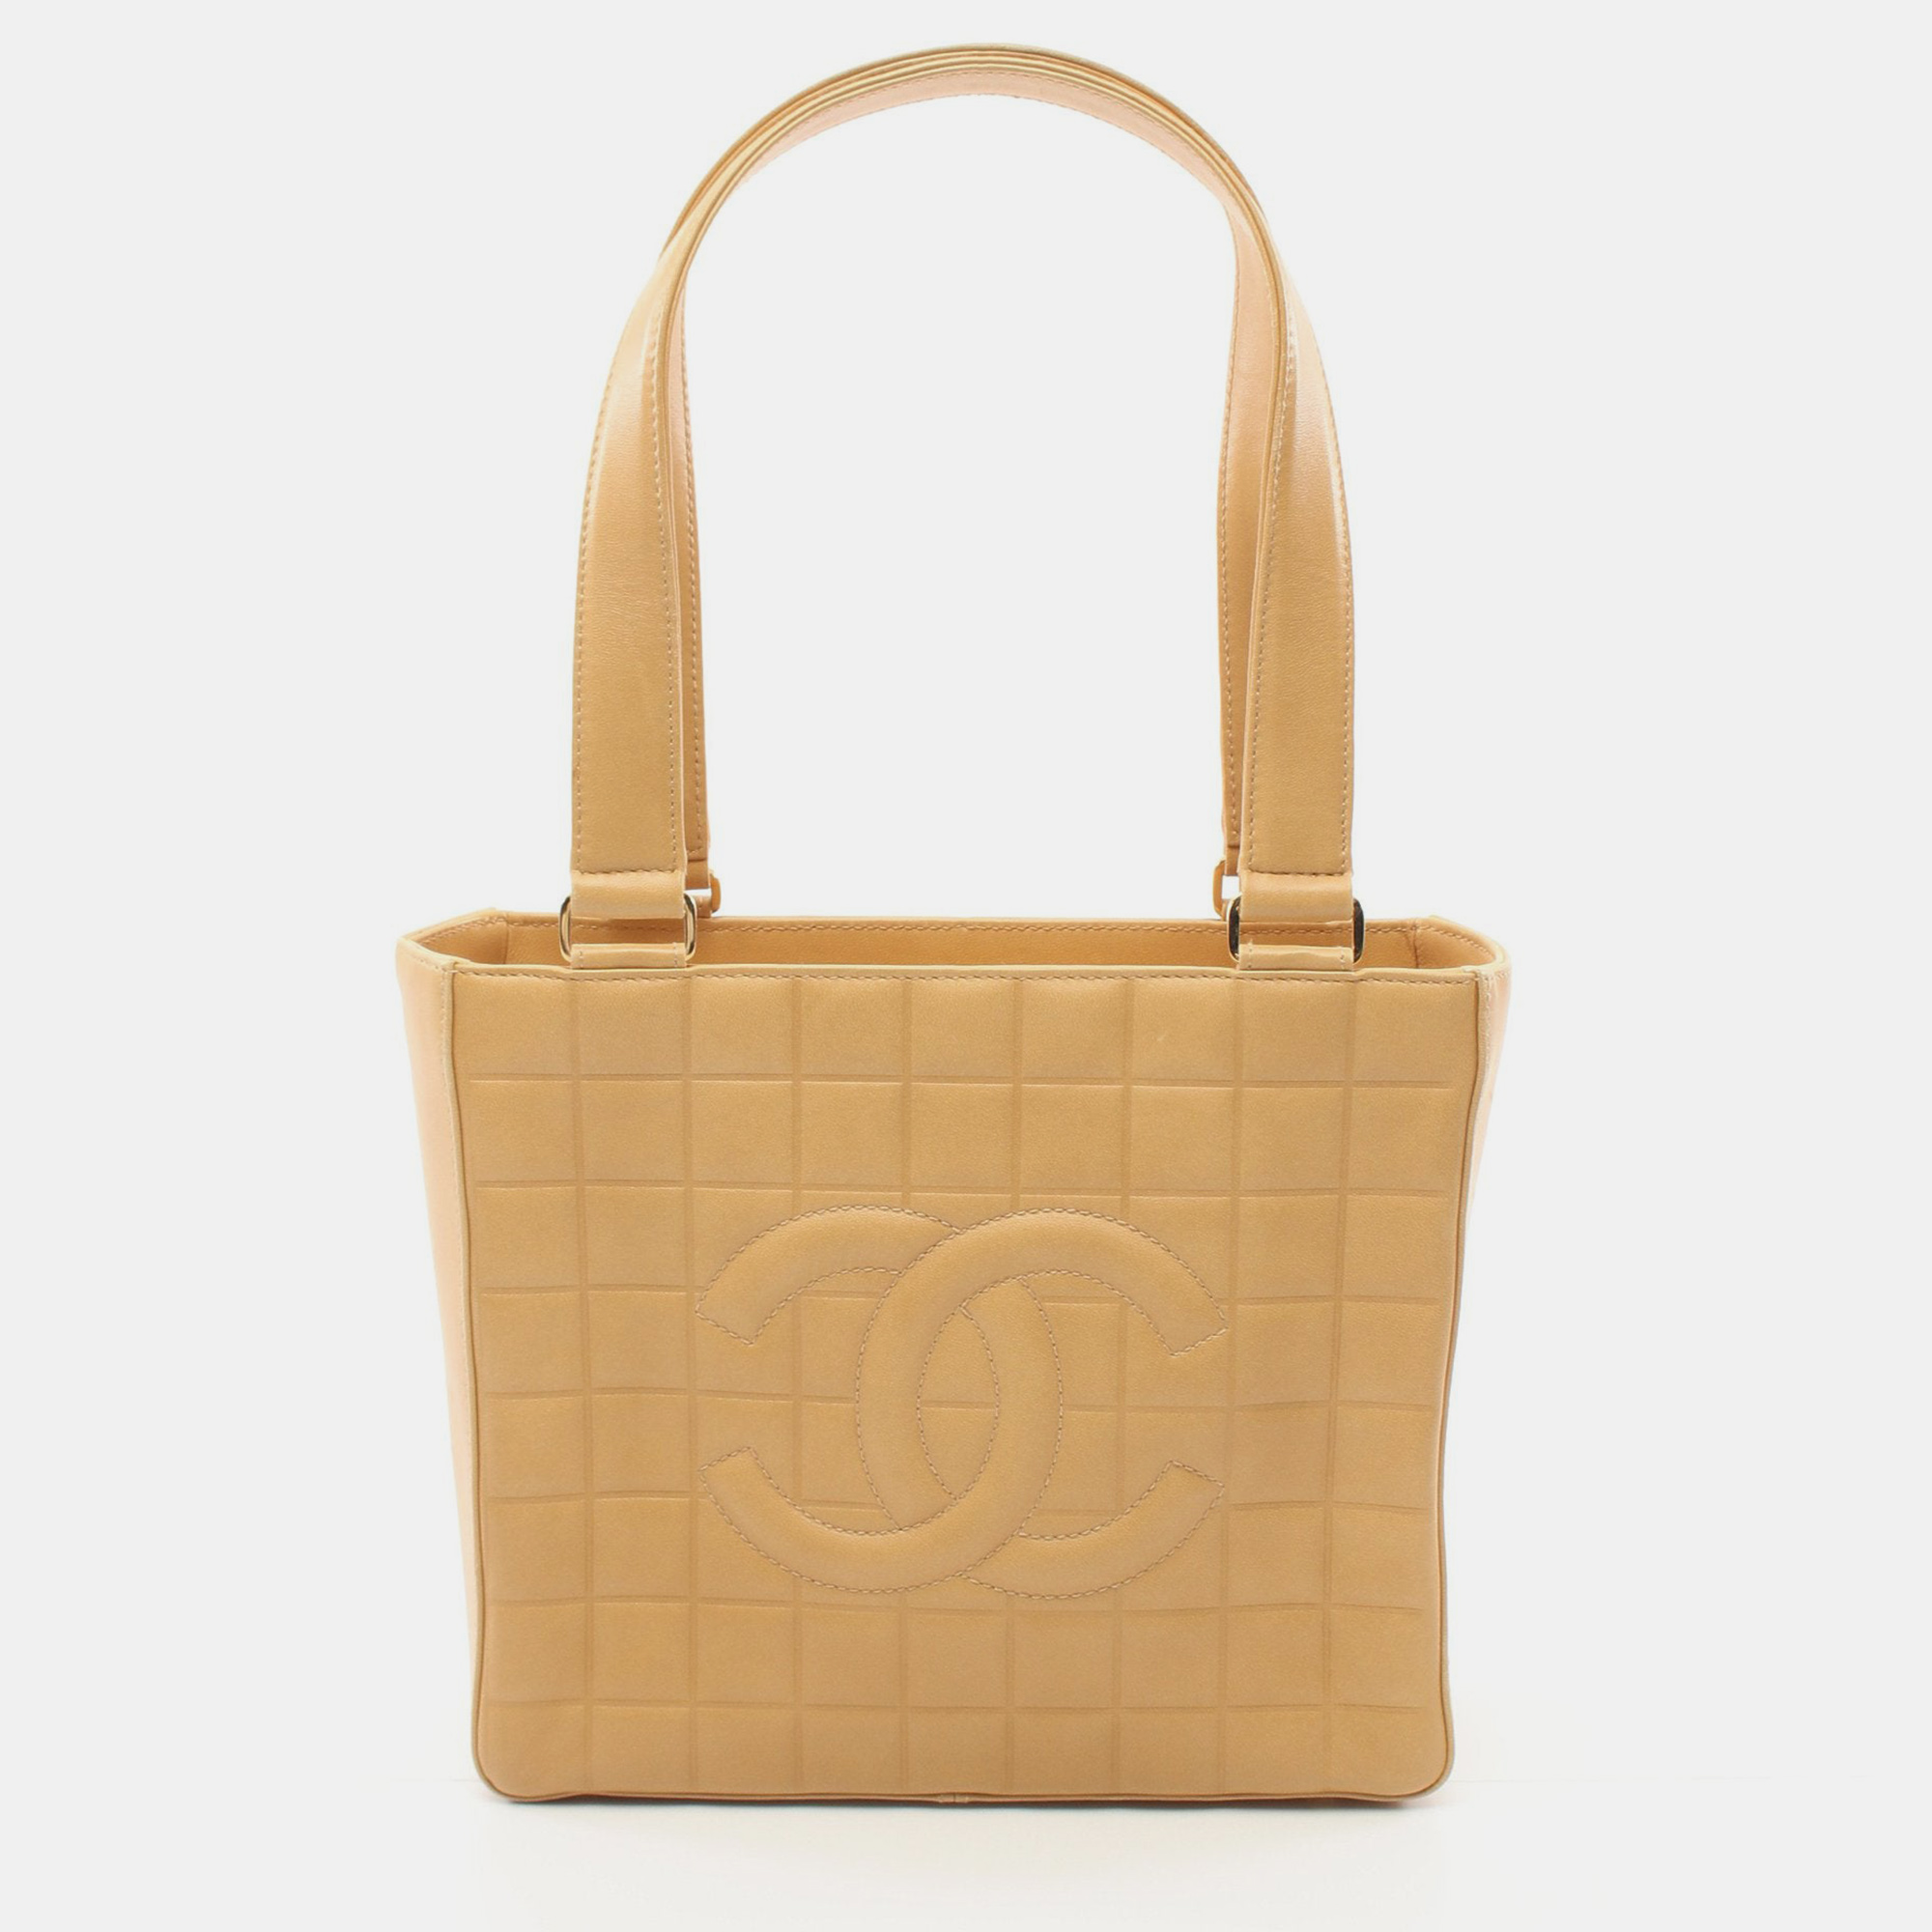 Chanel chocolate bar shoulder bag tote bag lambskin beige gold hardware